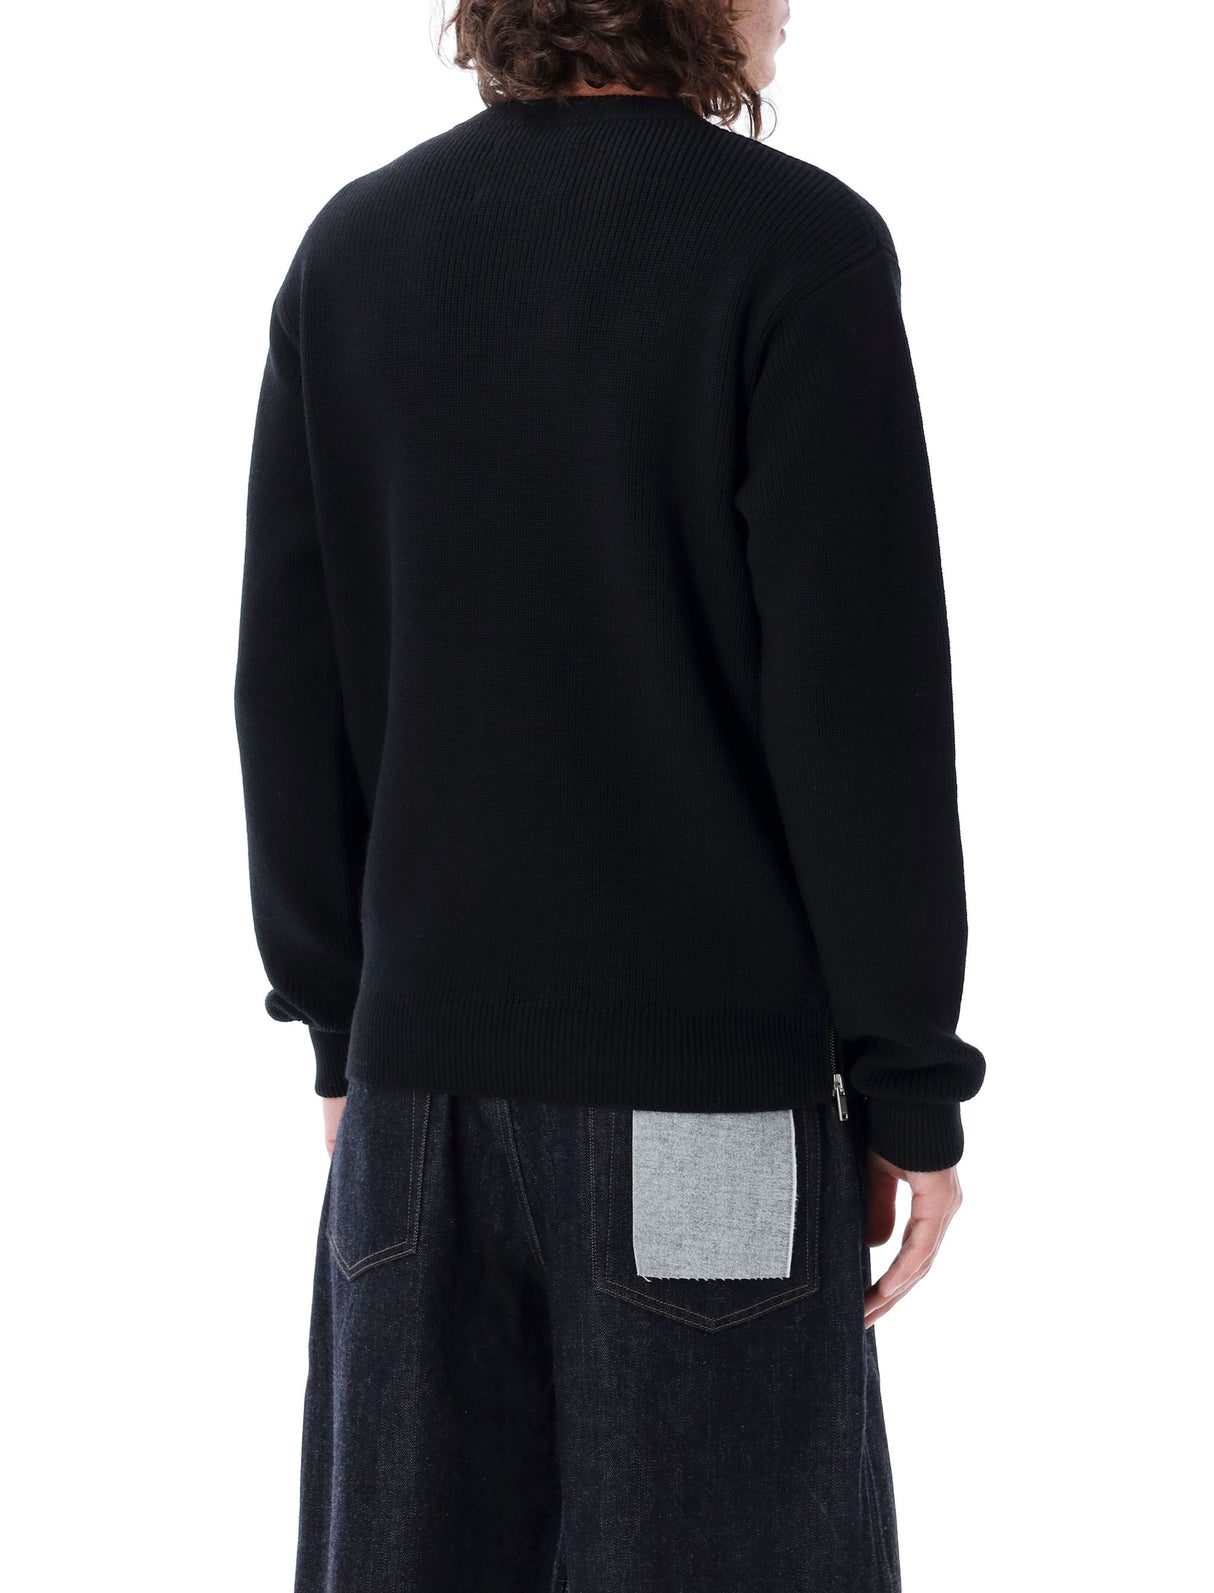 Men's Black Sweater with Side Zipper